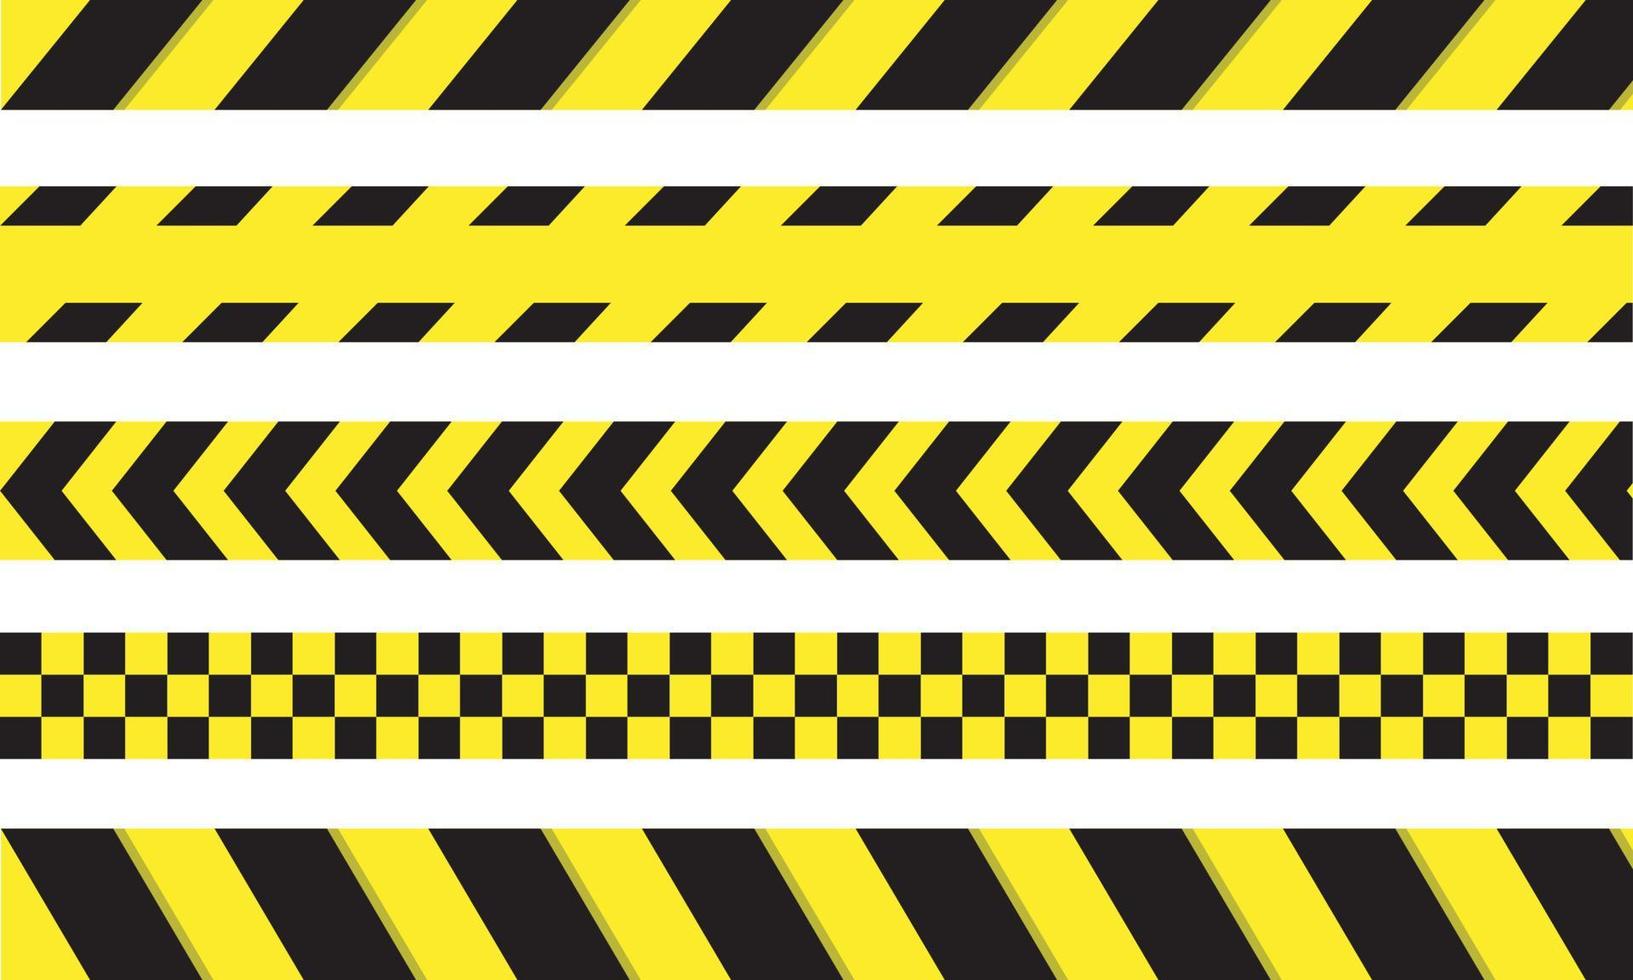 misdaad lijn tape. politie gevaar voorzichtigheid vector gele barrière. veiligheidslijn niet overschrijden. simpel ontwerp.